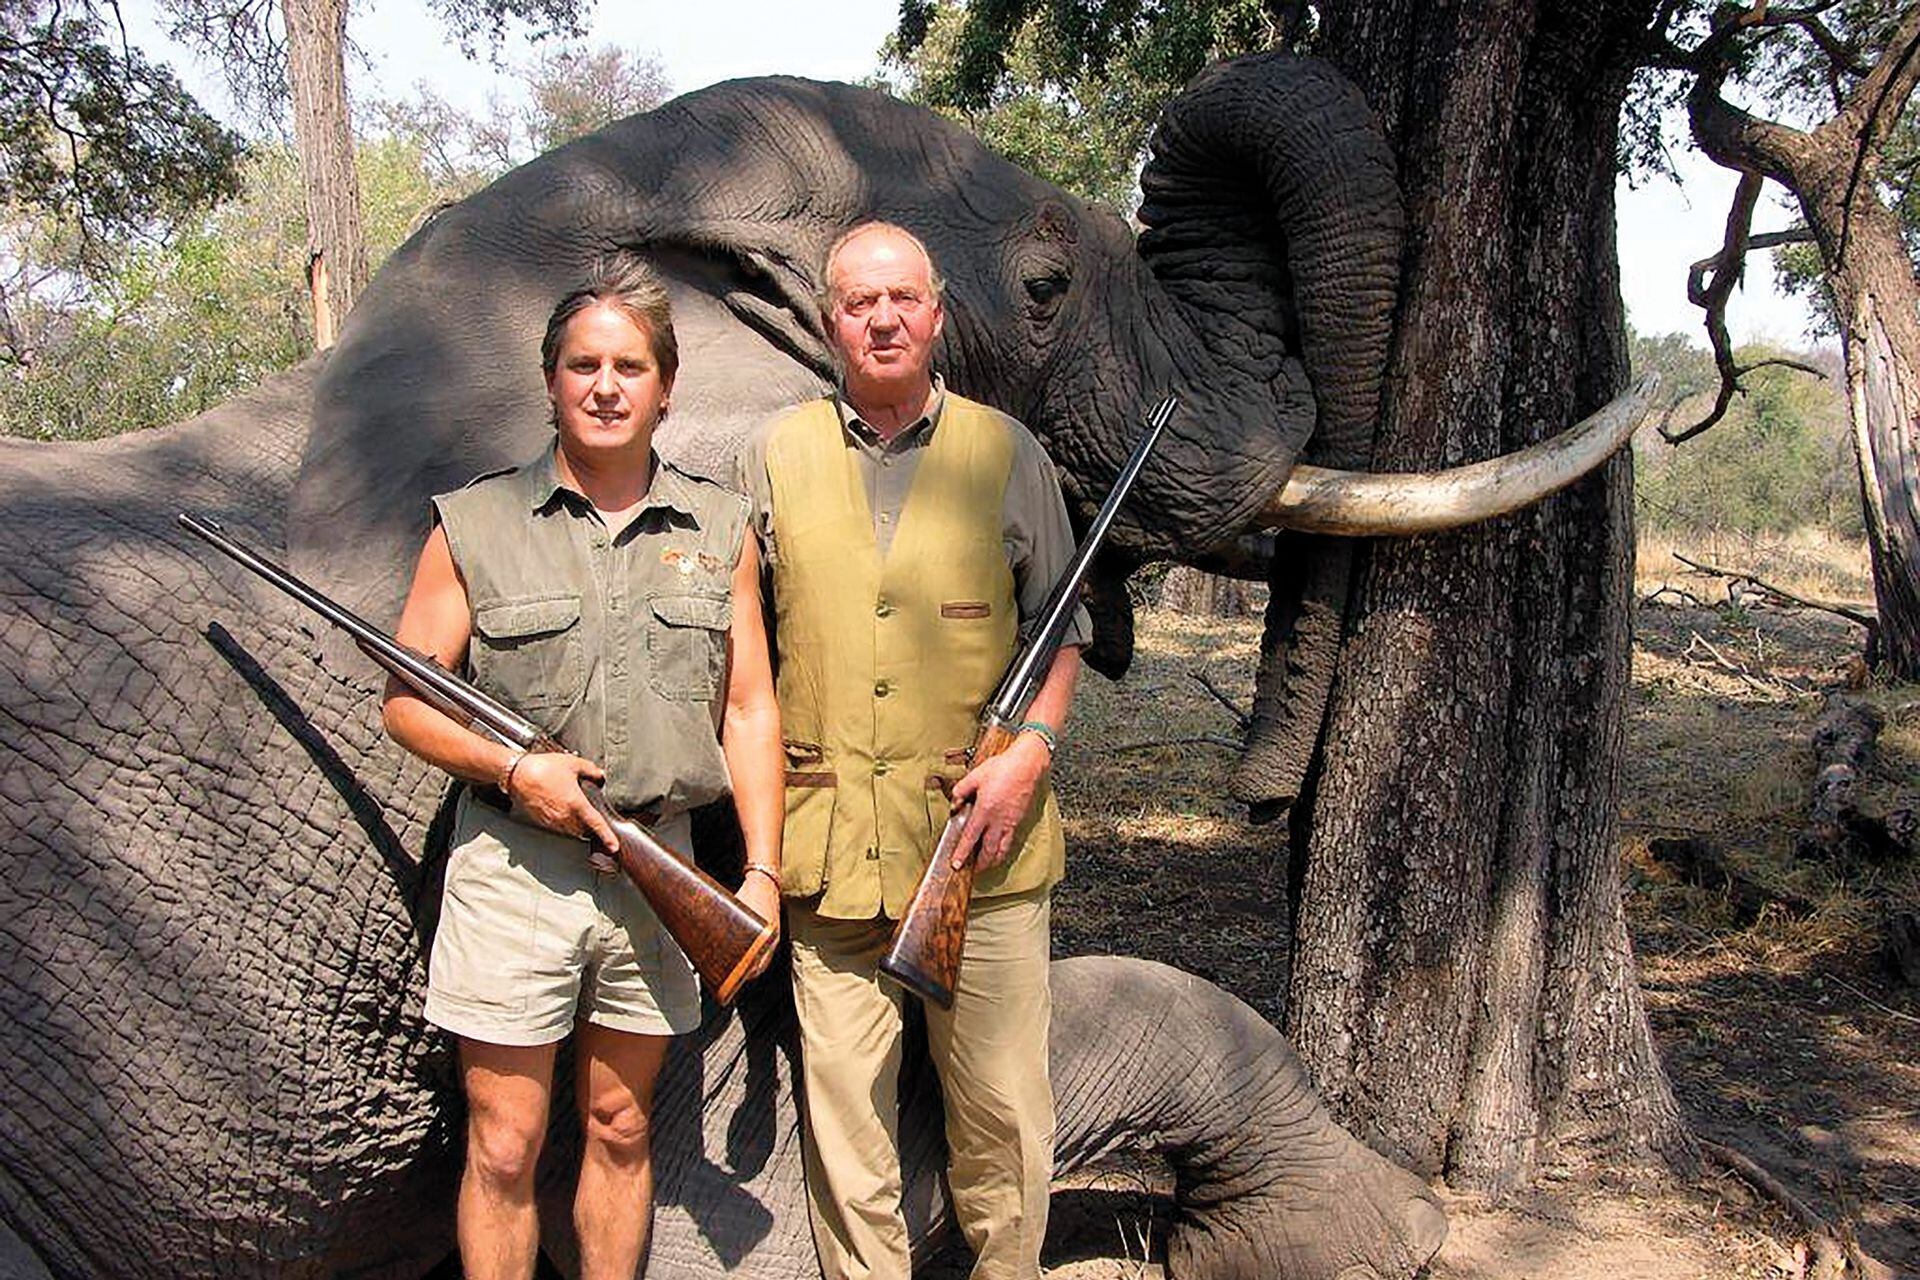 El periplo de caza a Botsuana, en 2012, aceleró el deterioro de la imagen pública de Juan Carlos